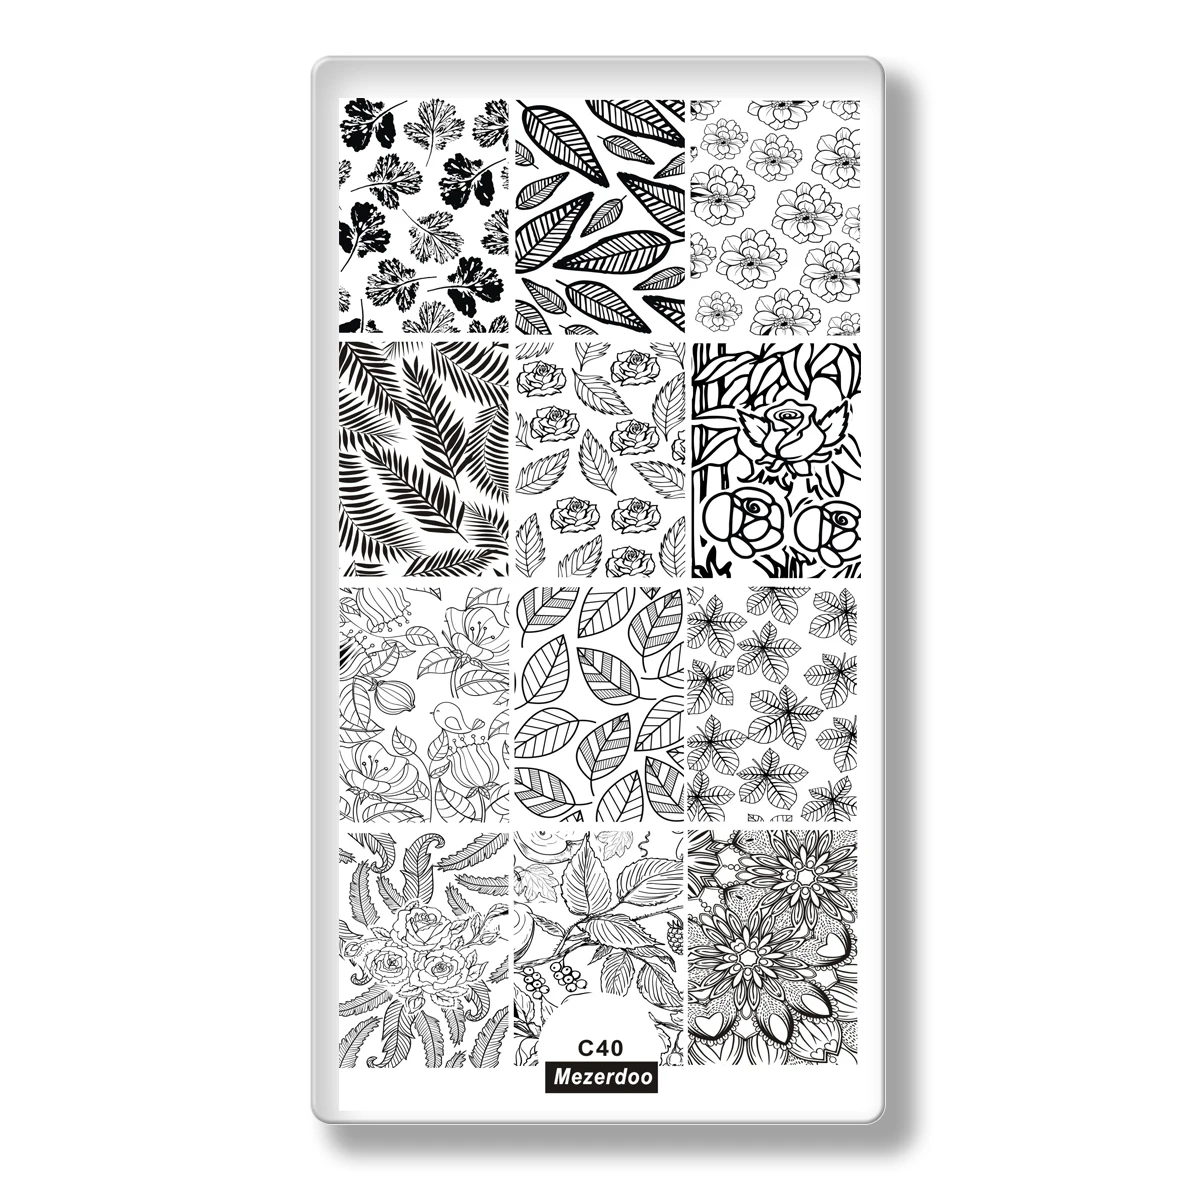 DIY различные дизайнерские пластины для штамповки ногтей любовь череп звезда DIY ногти изображения штампы пластины маникюр шаблон ногтей Живопись инструменты - Цвет: Mezerdoo C40